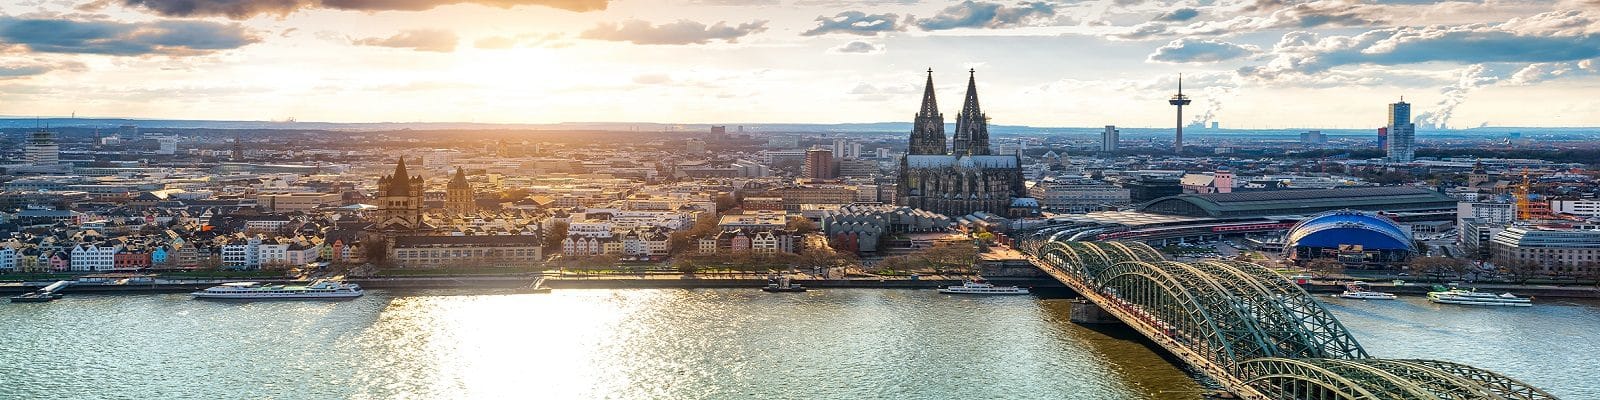 Blick über Köln mit Rhein, Dom und Hohenzollerbrücke